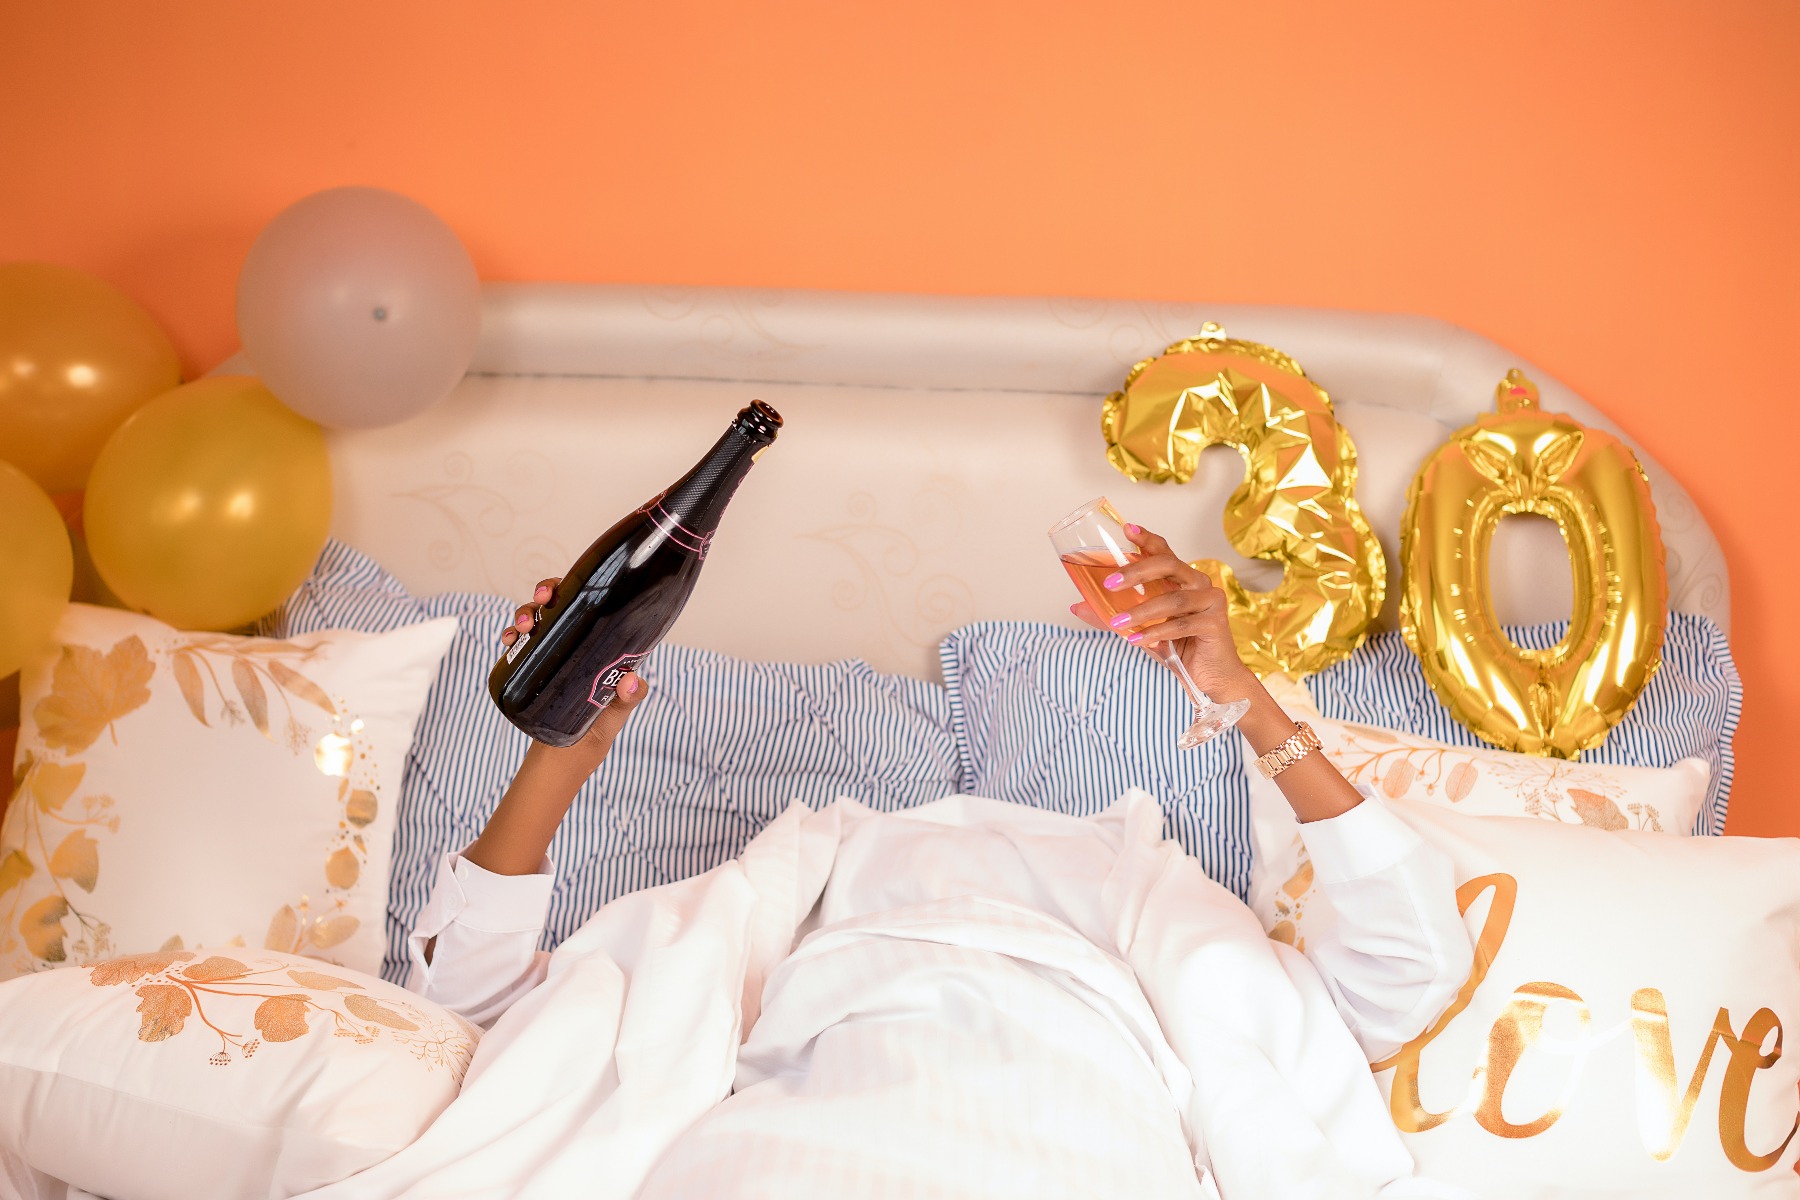 Femme dans son lit le lendemain de ses 30 ans, coupe de champagne et bouteille en main